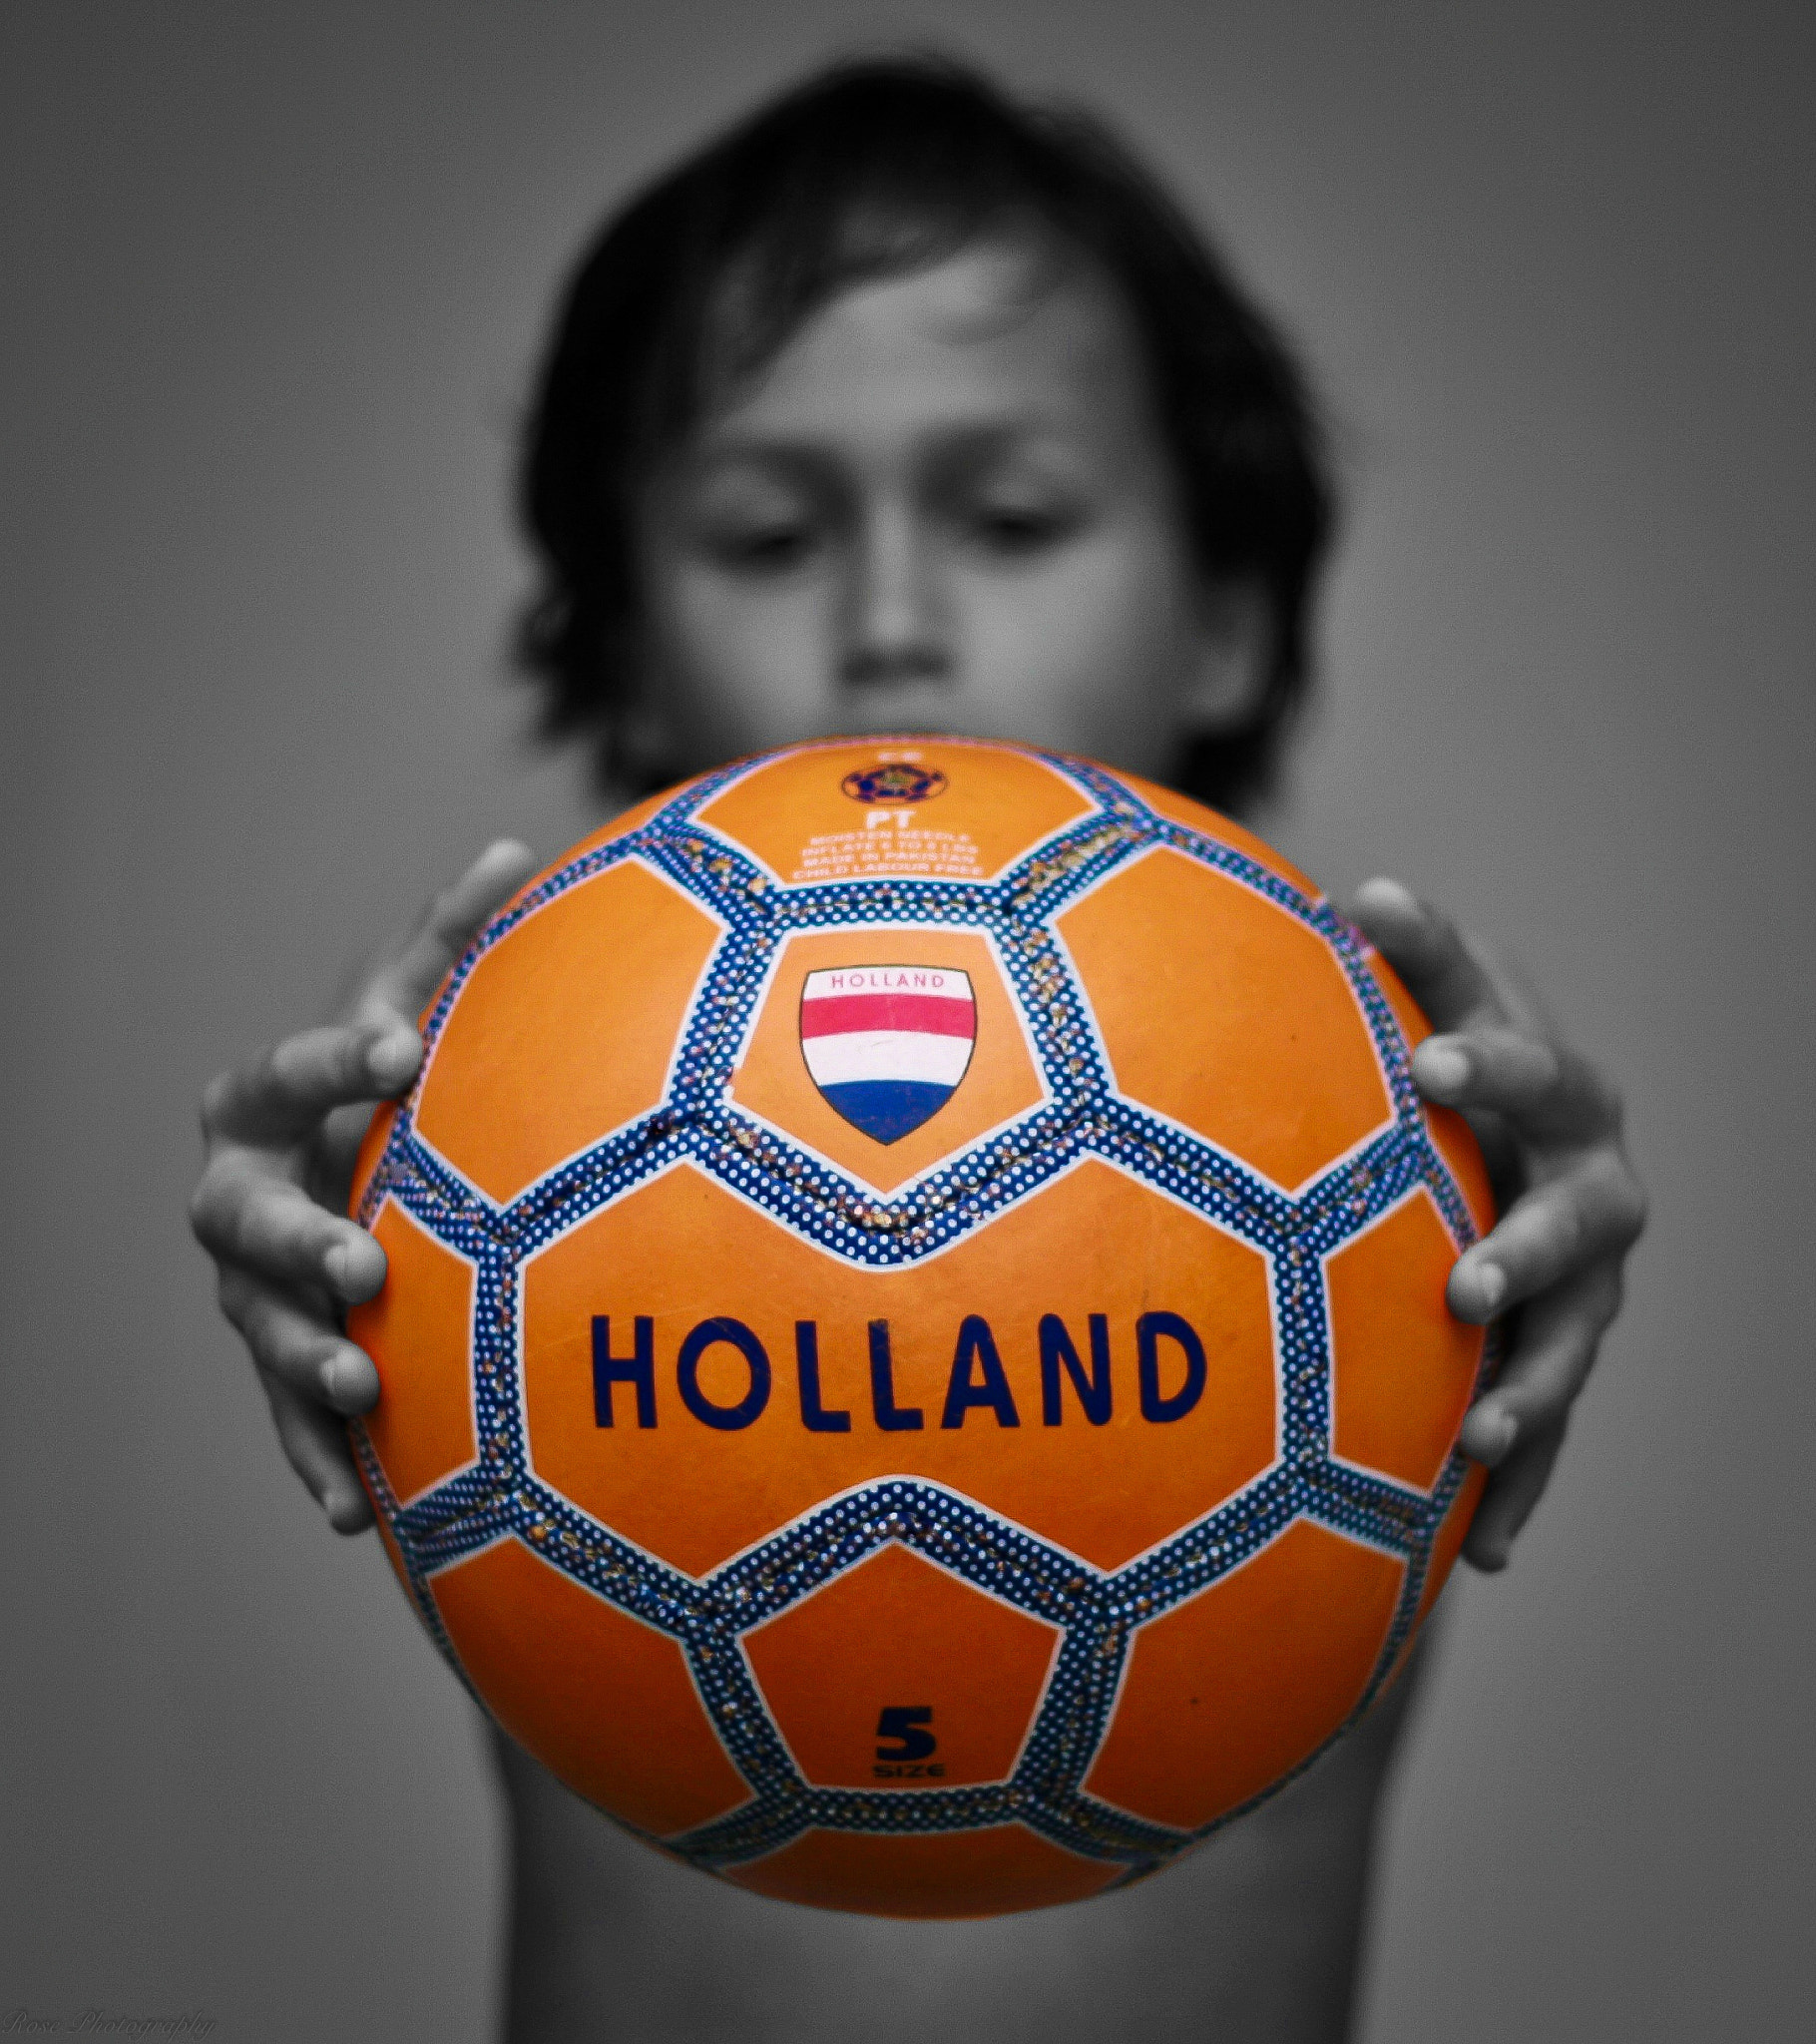 Holland-Spain: 5-1